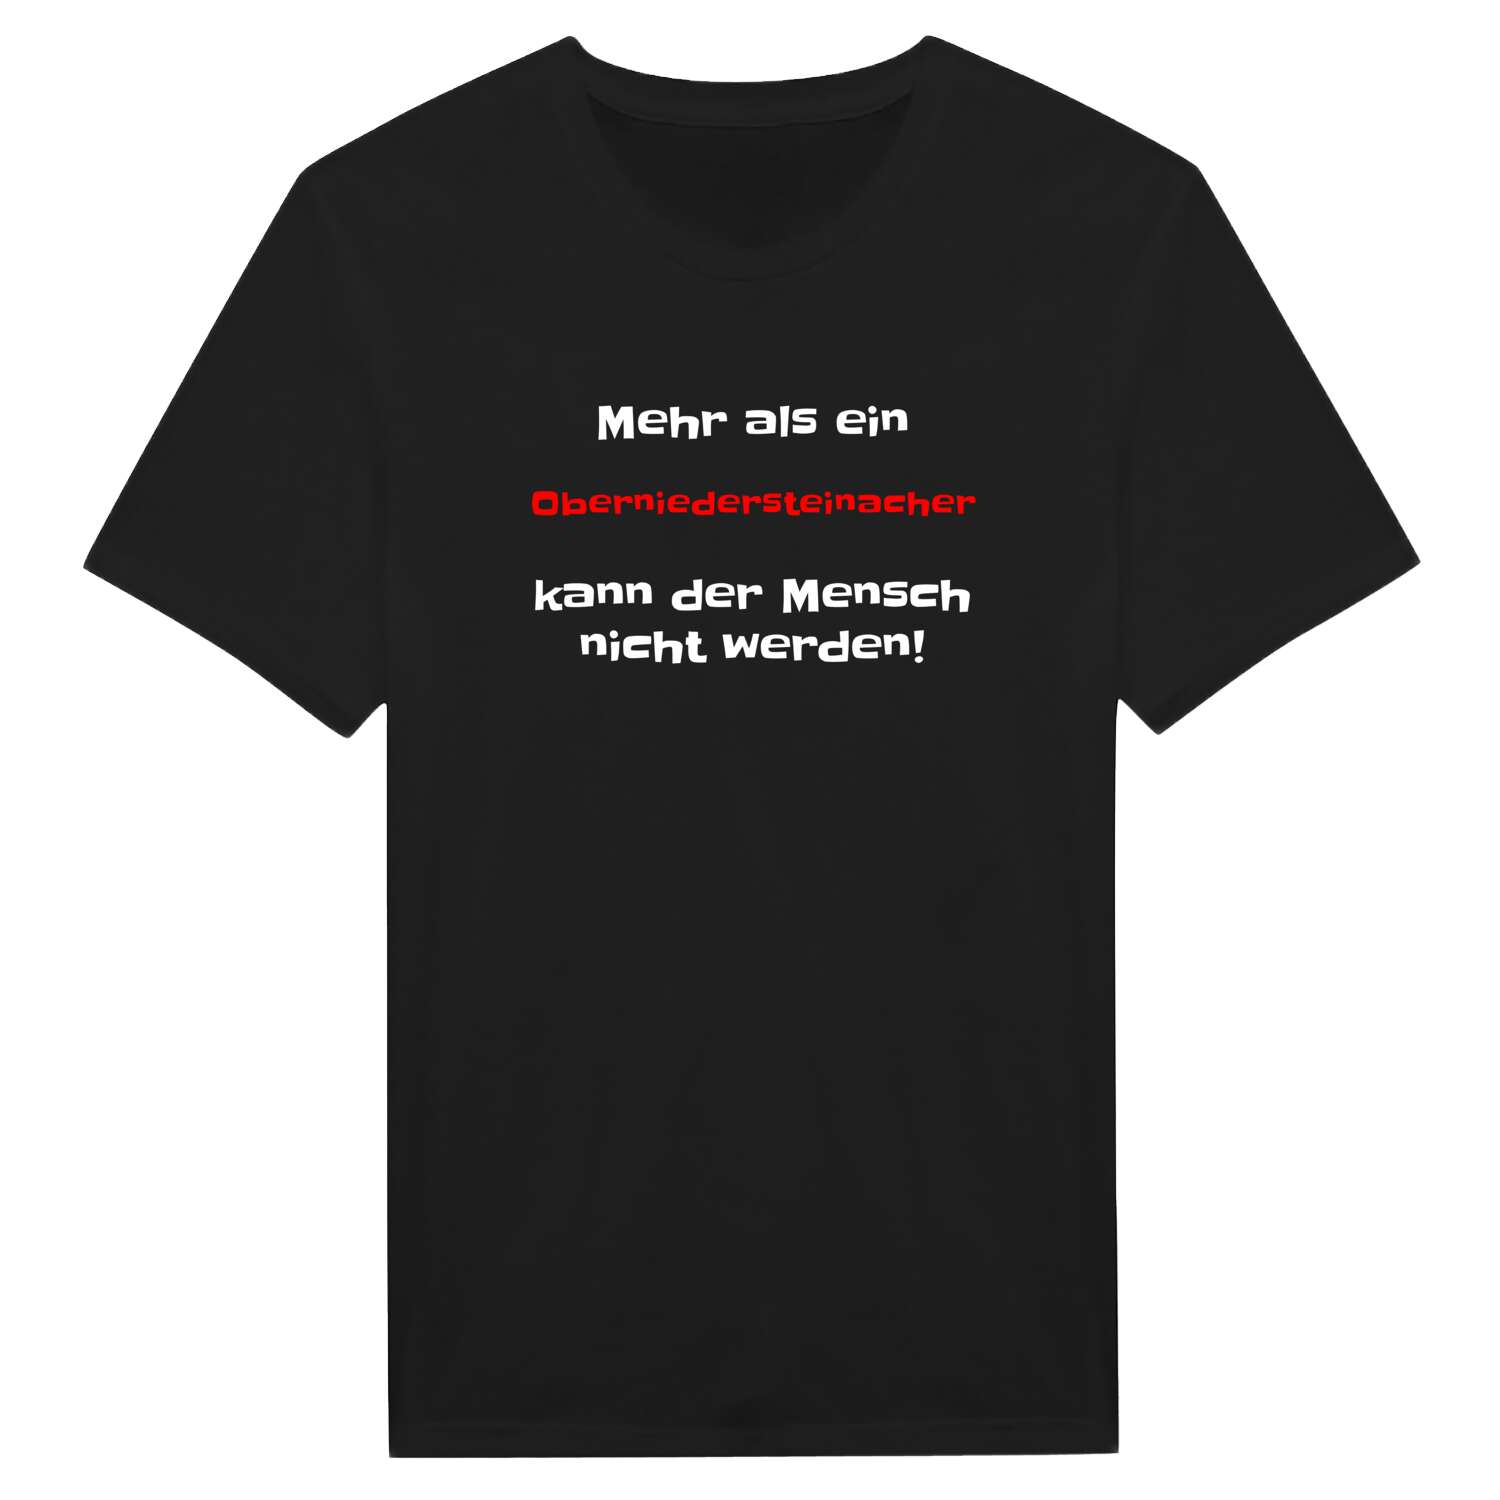 Oberniedersteinach T-Shirt »Mehr als ein«